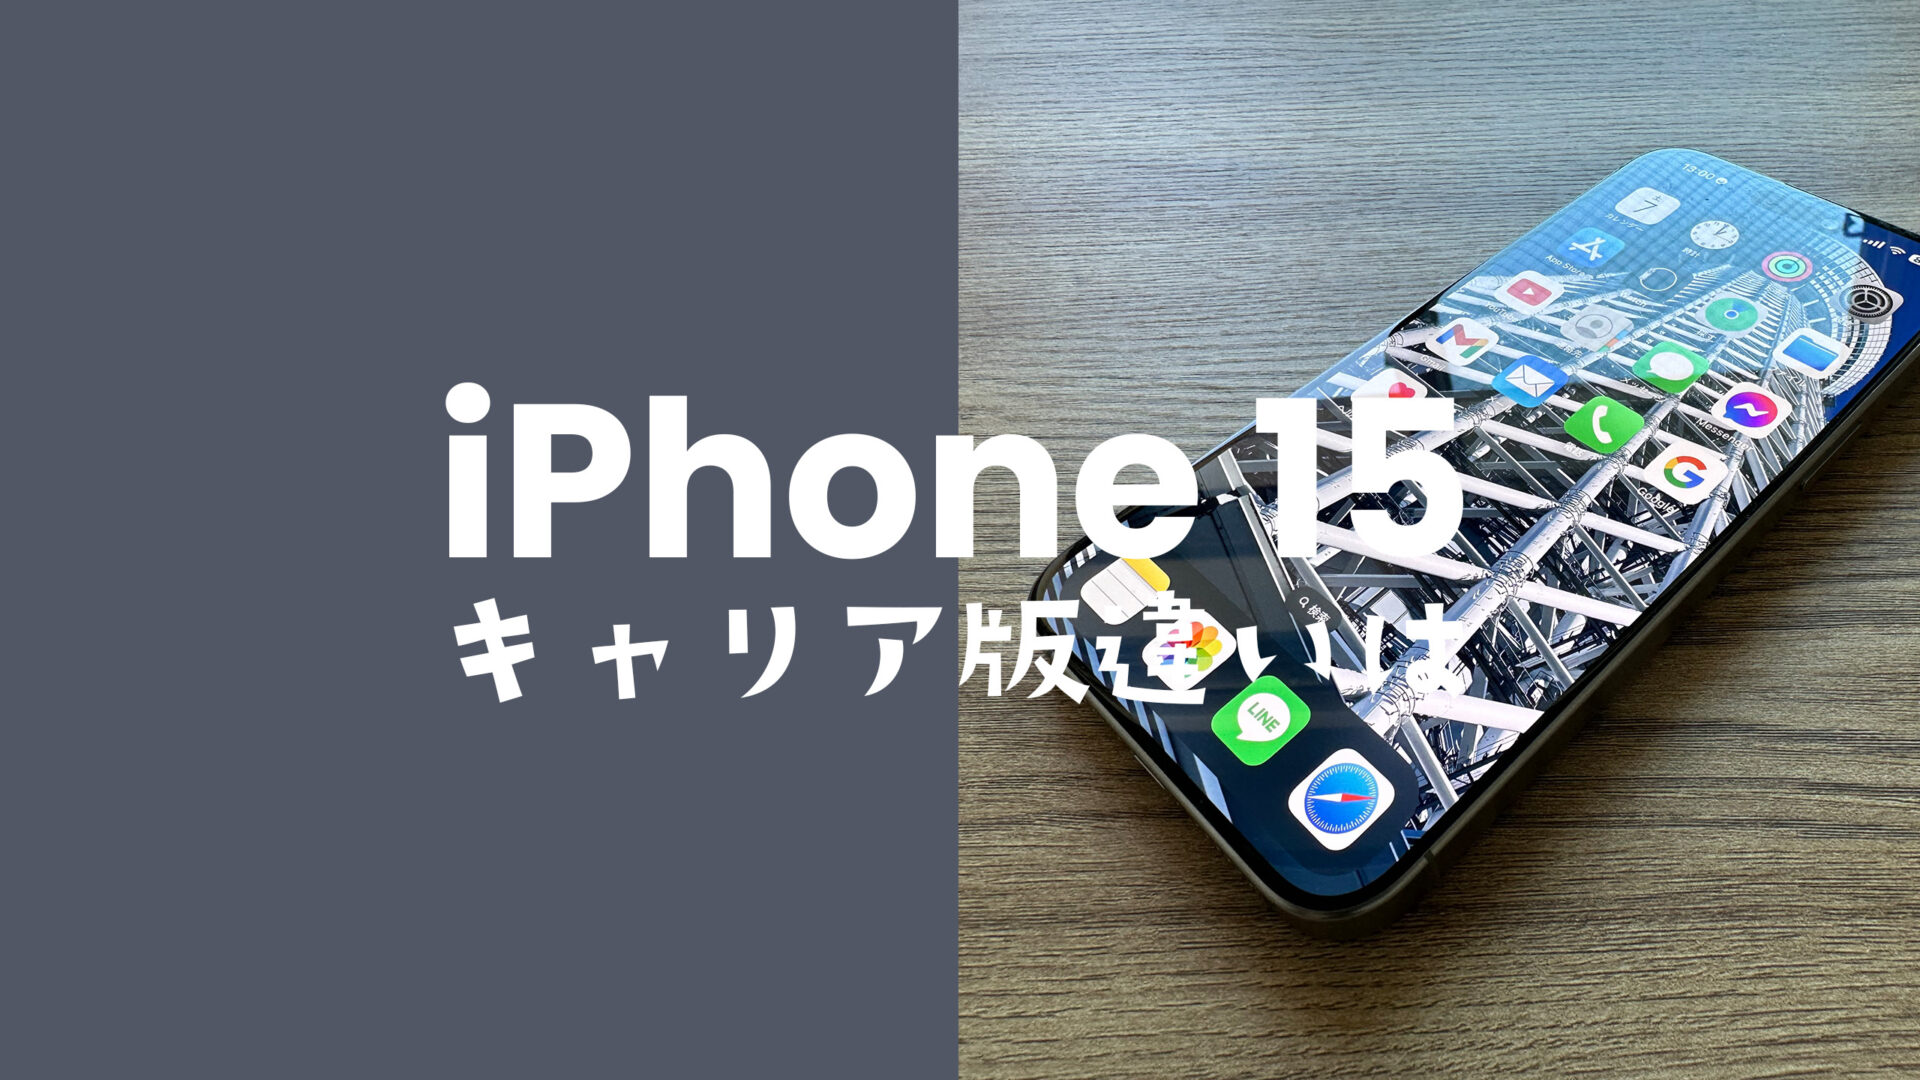 iPhone 15のキャリア版とアップルストア版の違いを比較。仕様や対応バンドはすべて共通。のサムネイル画像